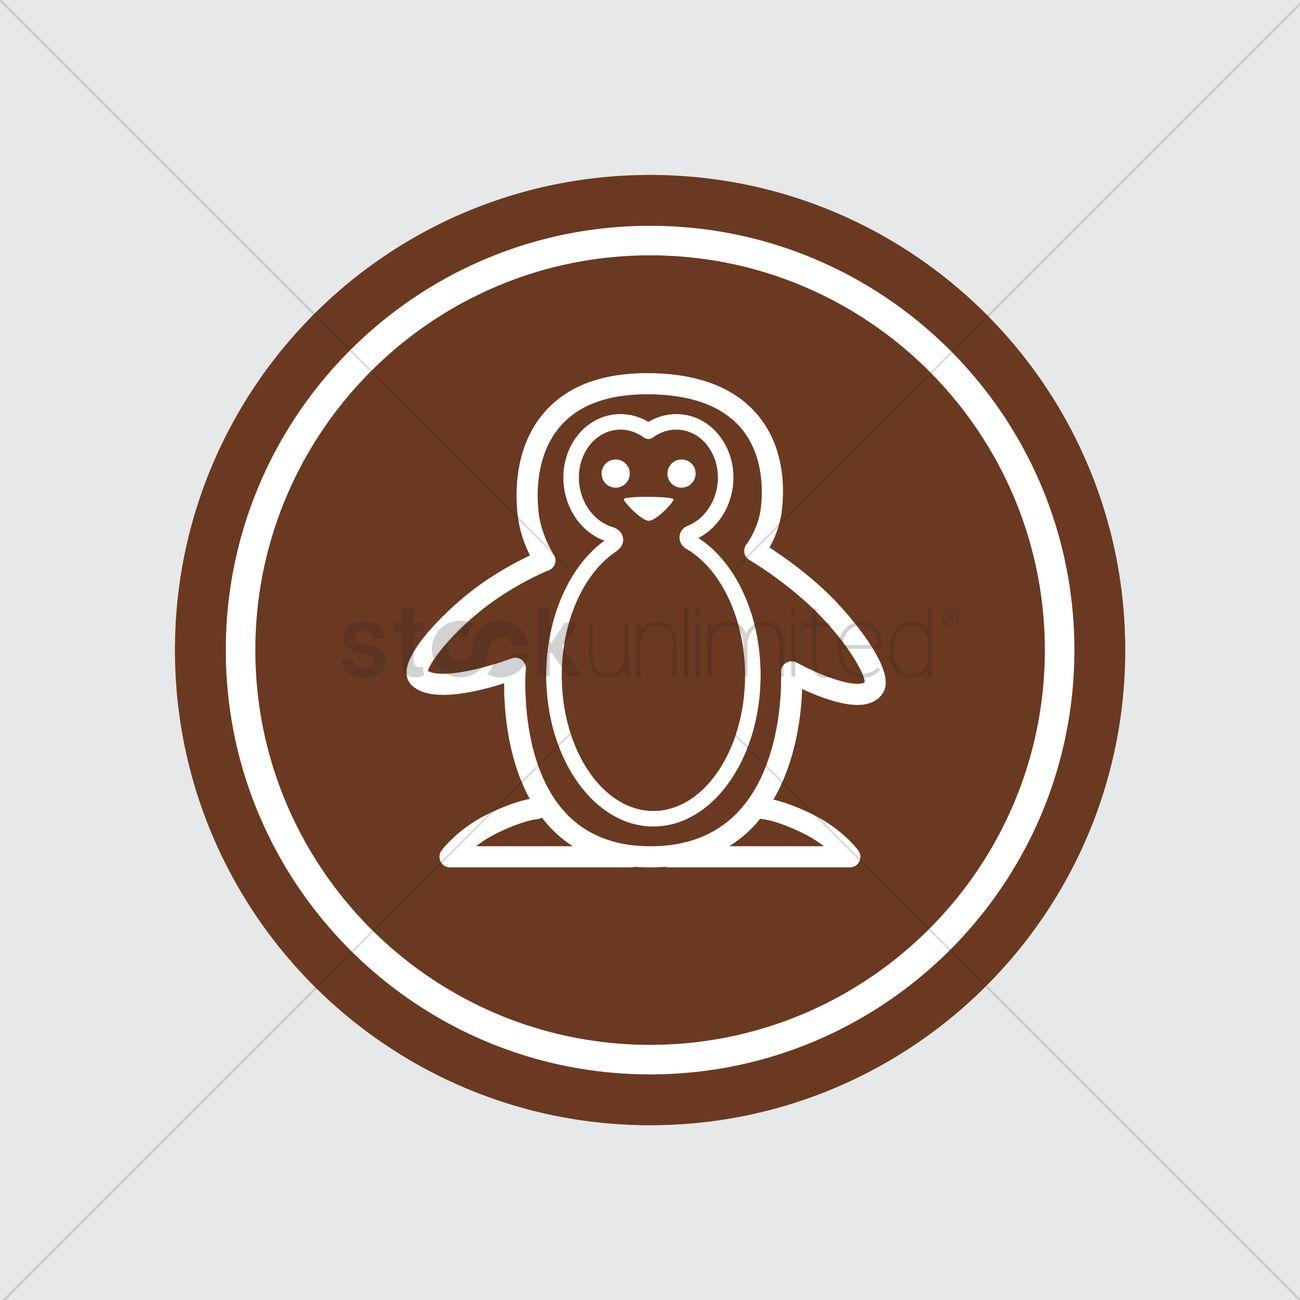 Penguin in Orange Oval Logo - Penguin Vector Image - 1379325 | StockUnlimited